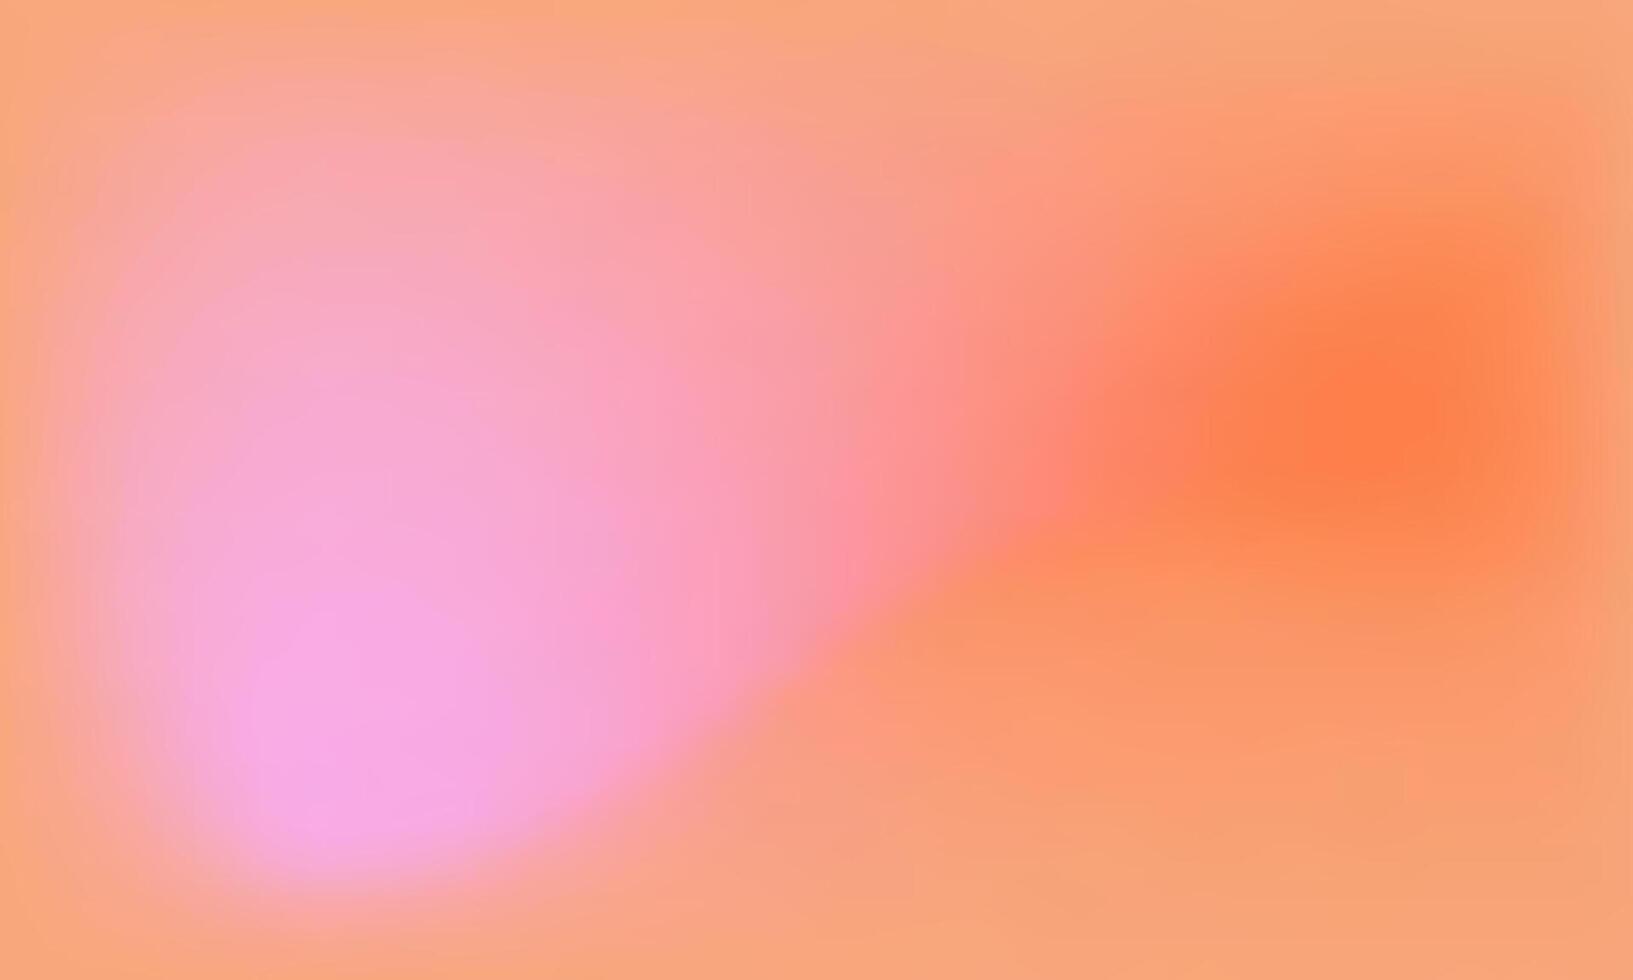 Soft Blurry Pastel Gradient Orange Pink Background vector